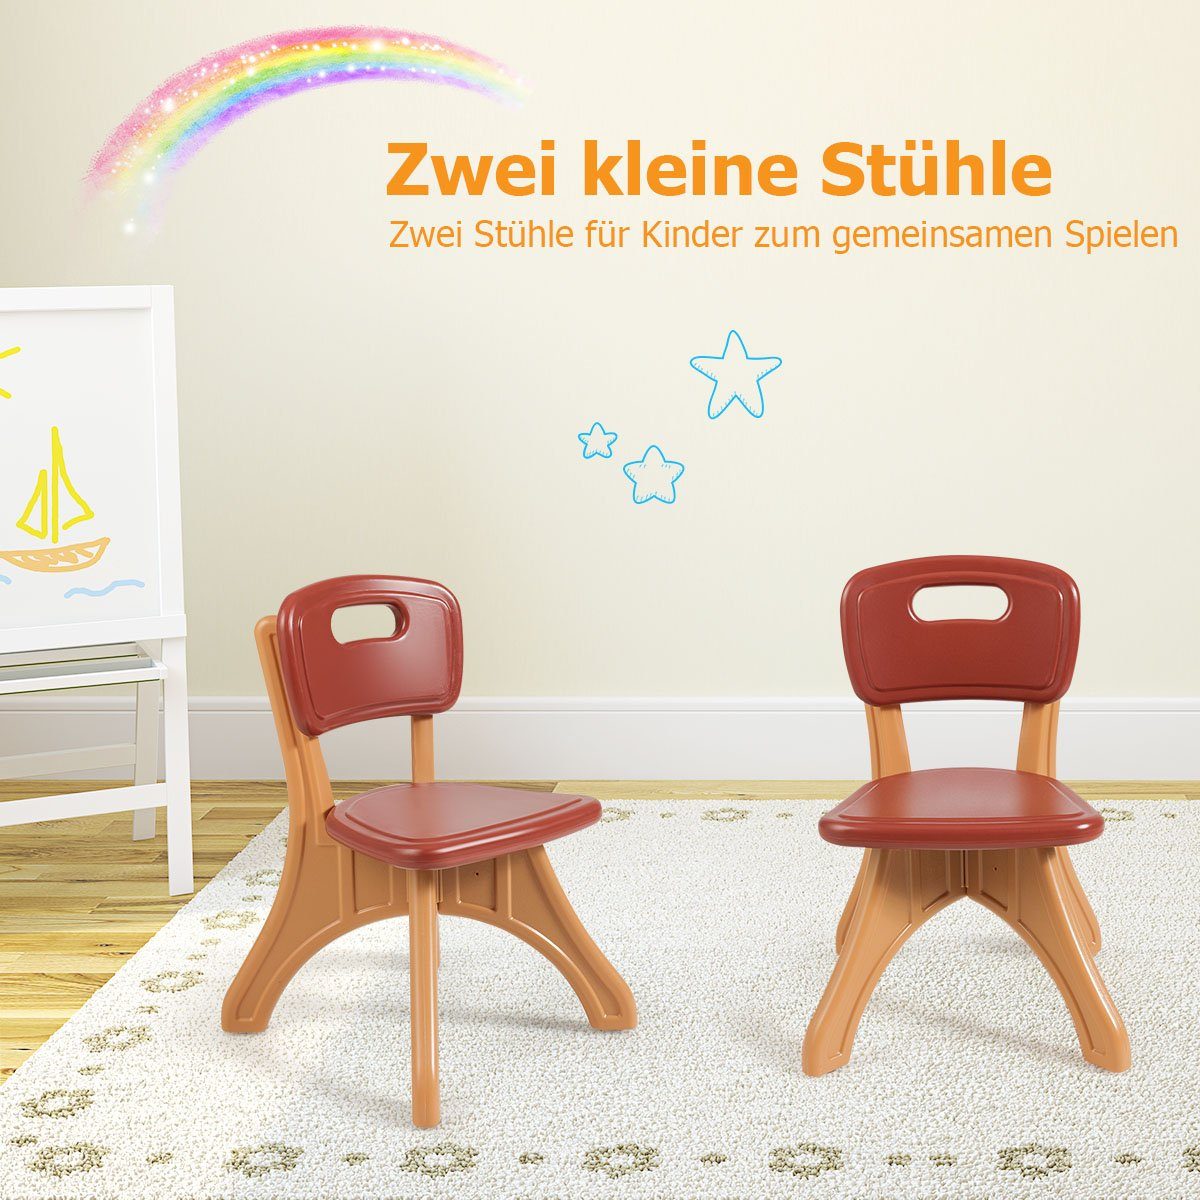 mit Stühlen&Kindertisch, COSTWAY Braun Stauraum, 2 Kindersitzgruppe, Kunststoff mit